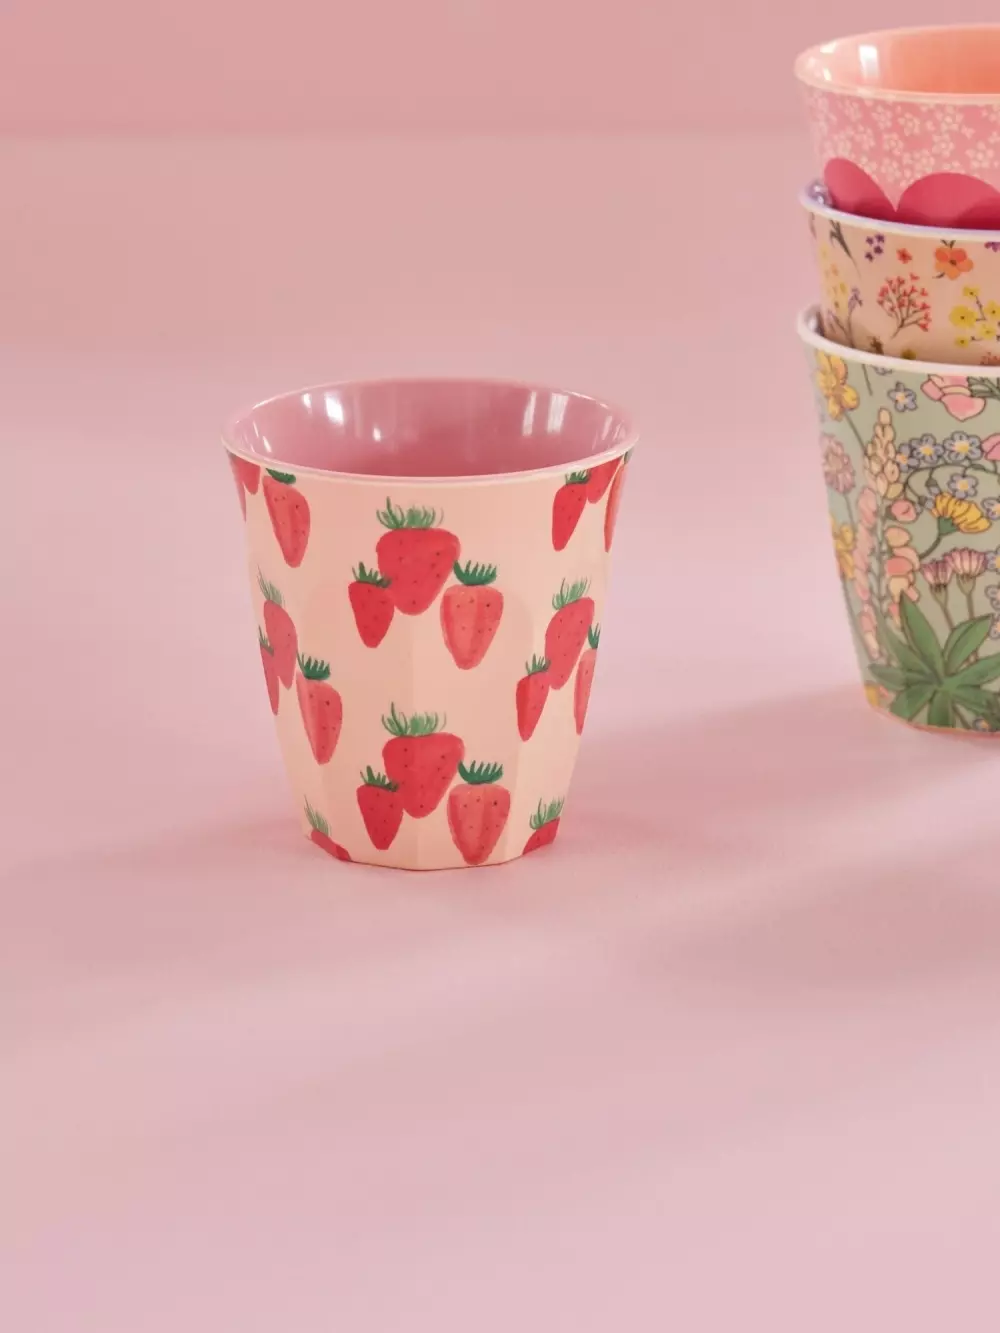 Melaminkopp Strawberry H9, 5708315181524, MELCU-STRAWB, Kjøkken, Melamin- & Treservise, Rice, Melamine Cup with Strawberry Print - Medium - 250 ml